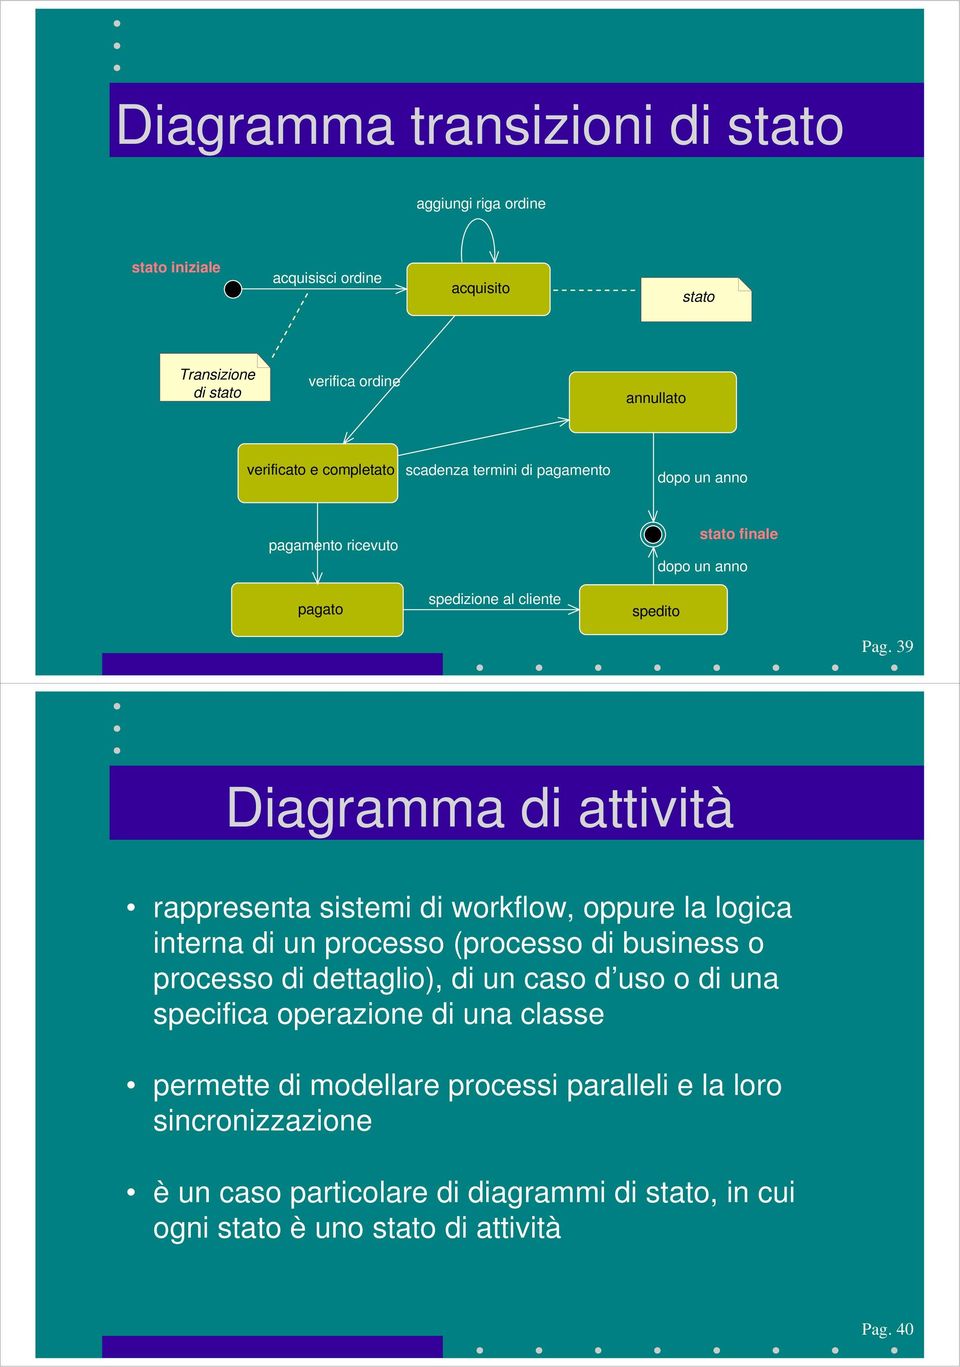 39 Diagramma di attività rappresenta sistemi di workflow, oppure la logica interna di un processo (processo di business o processo di dettaglio), di un caso d uso o di